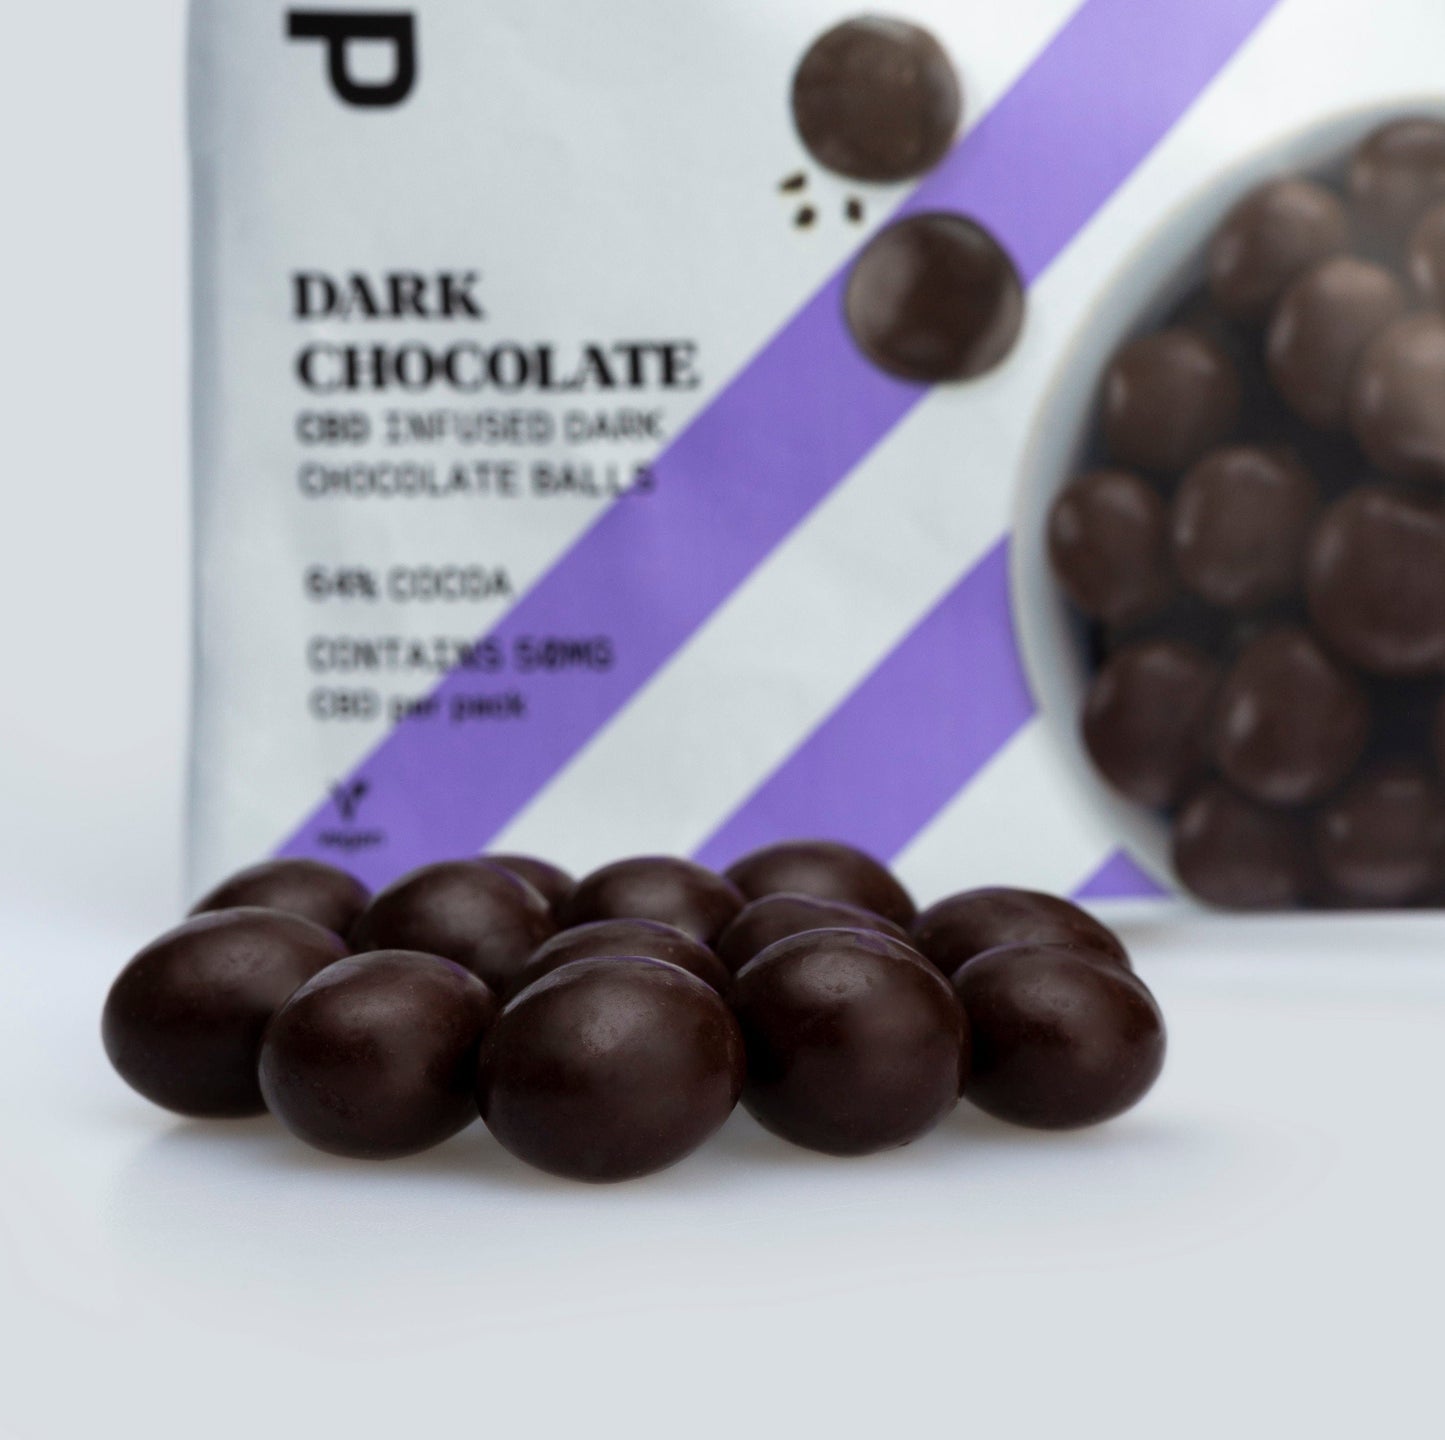 CBD Dark Chocolate Balls 50mg - 64% Cocoa Solids